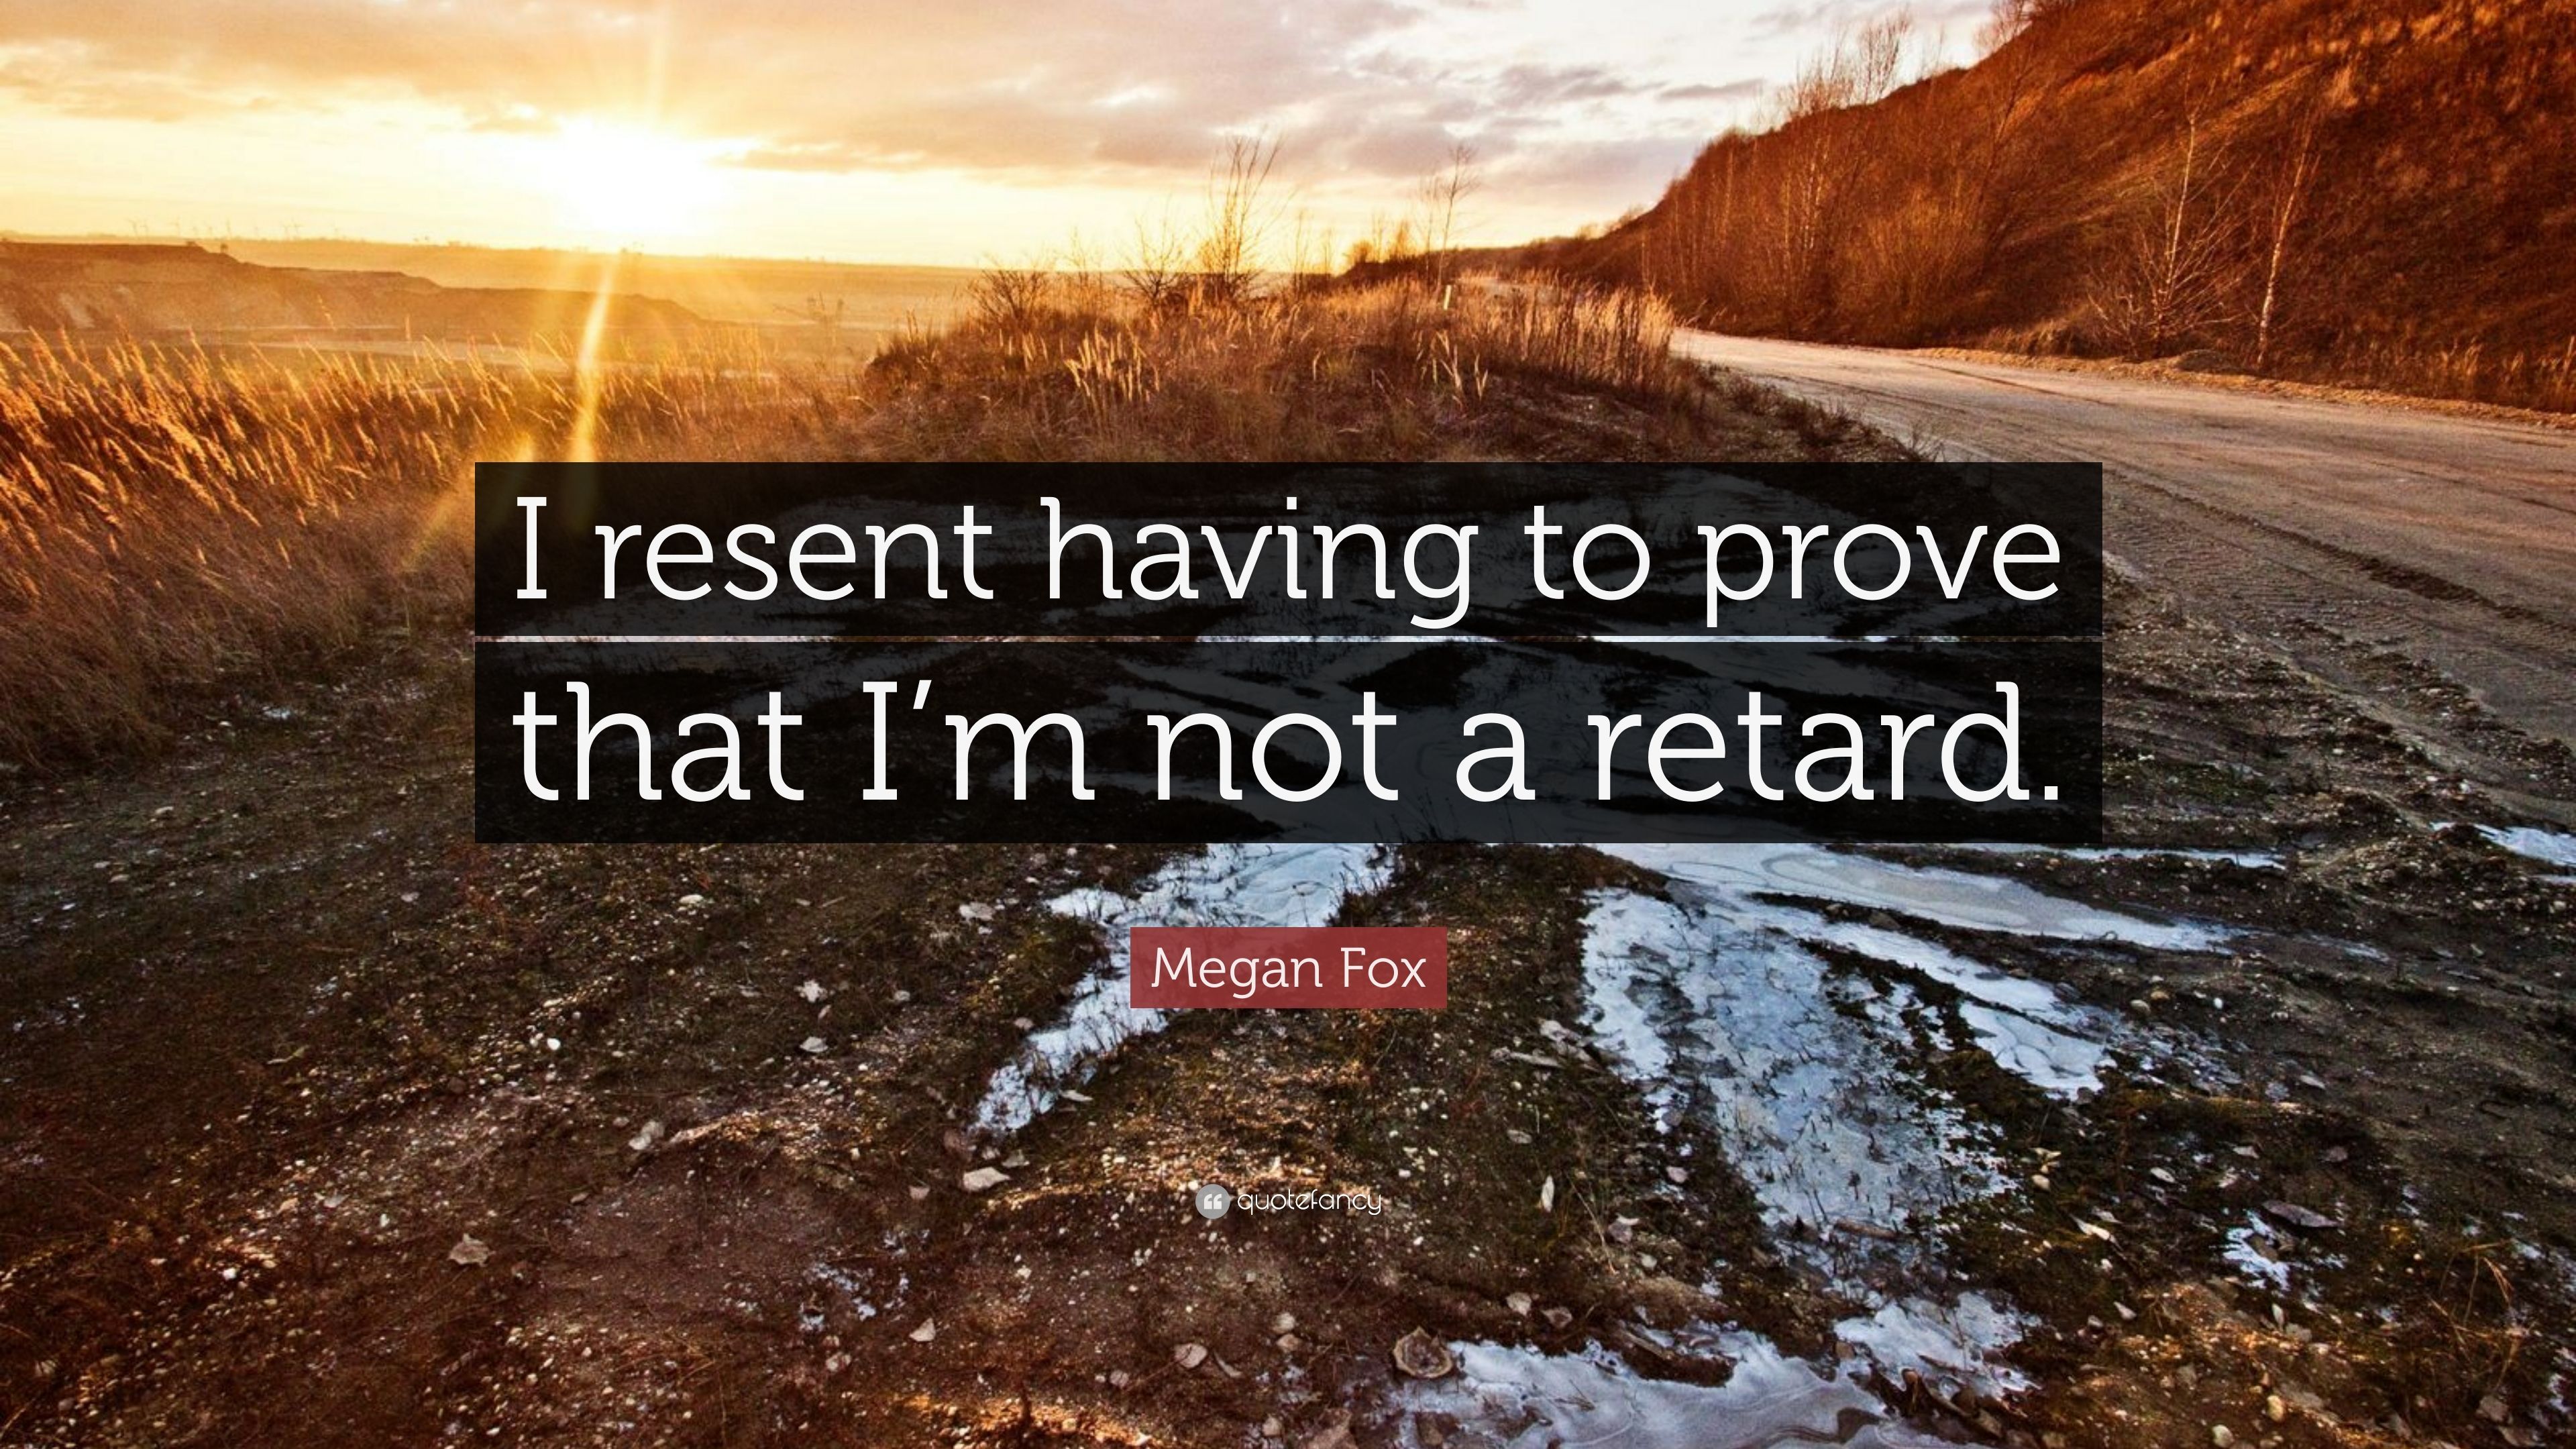 Megan Fox Quote: “I resent having to prove that I'm not a retard